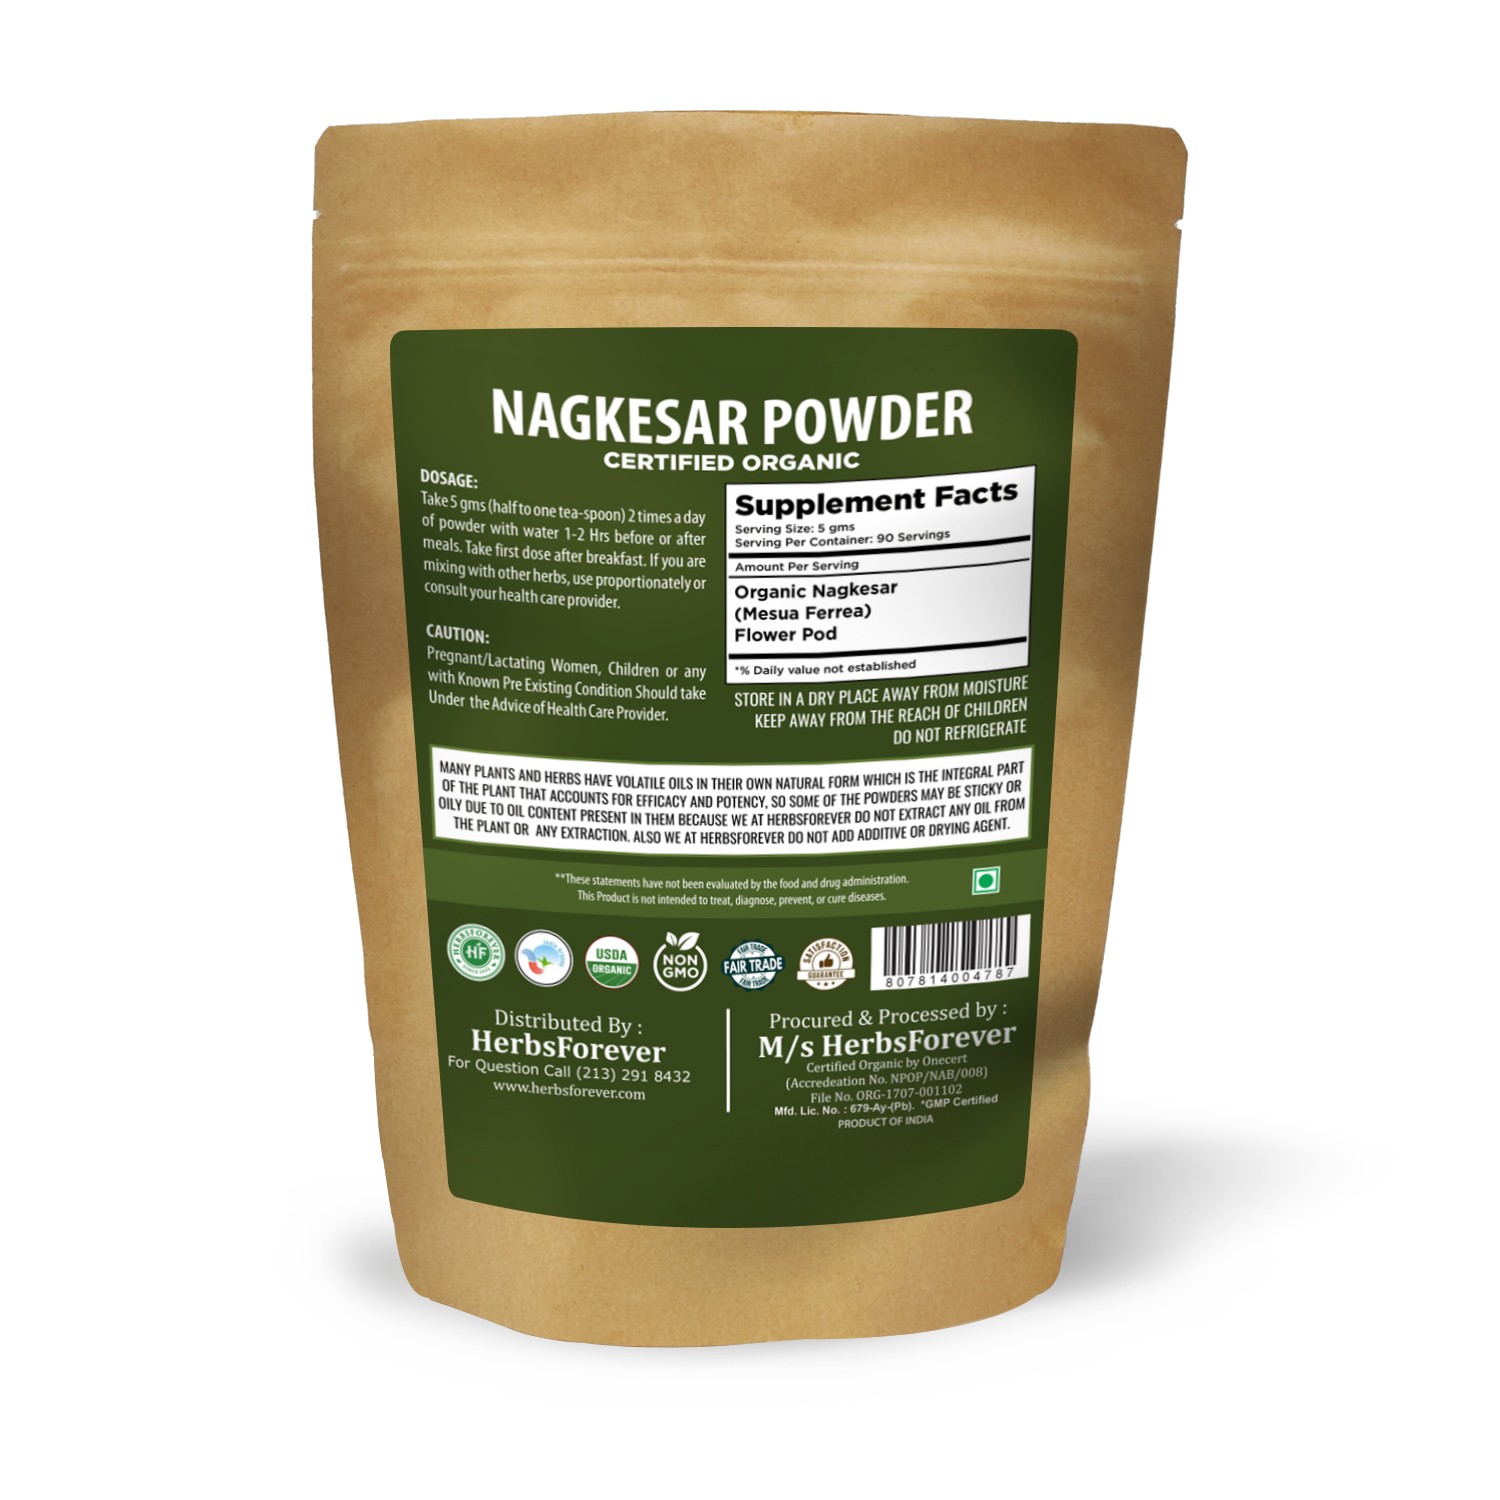 Nagkesar Powder